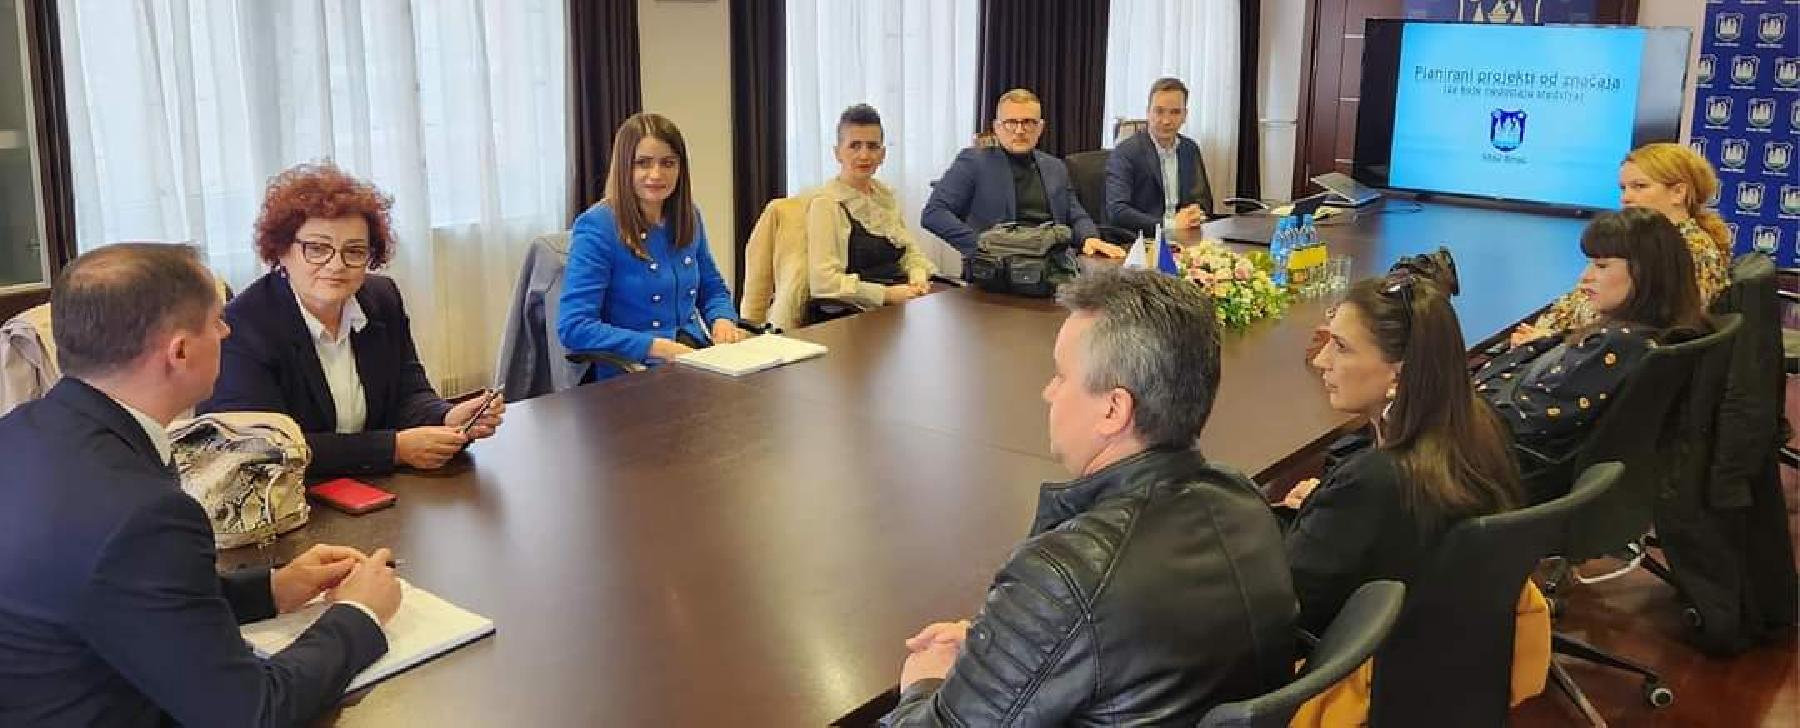 Bihaćki gradonačelnik Elvedin Sedić ugostio je danas zastupnike u Skupštini USK-a koji dolaze s područja GRAD BIHAĆ